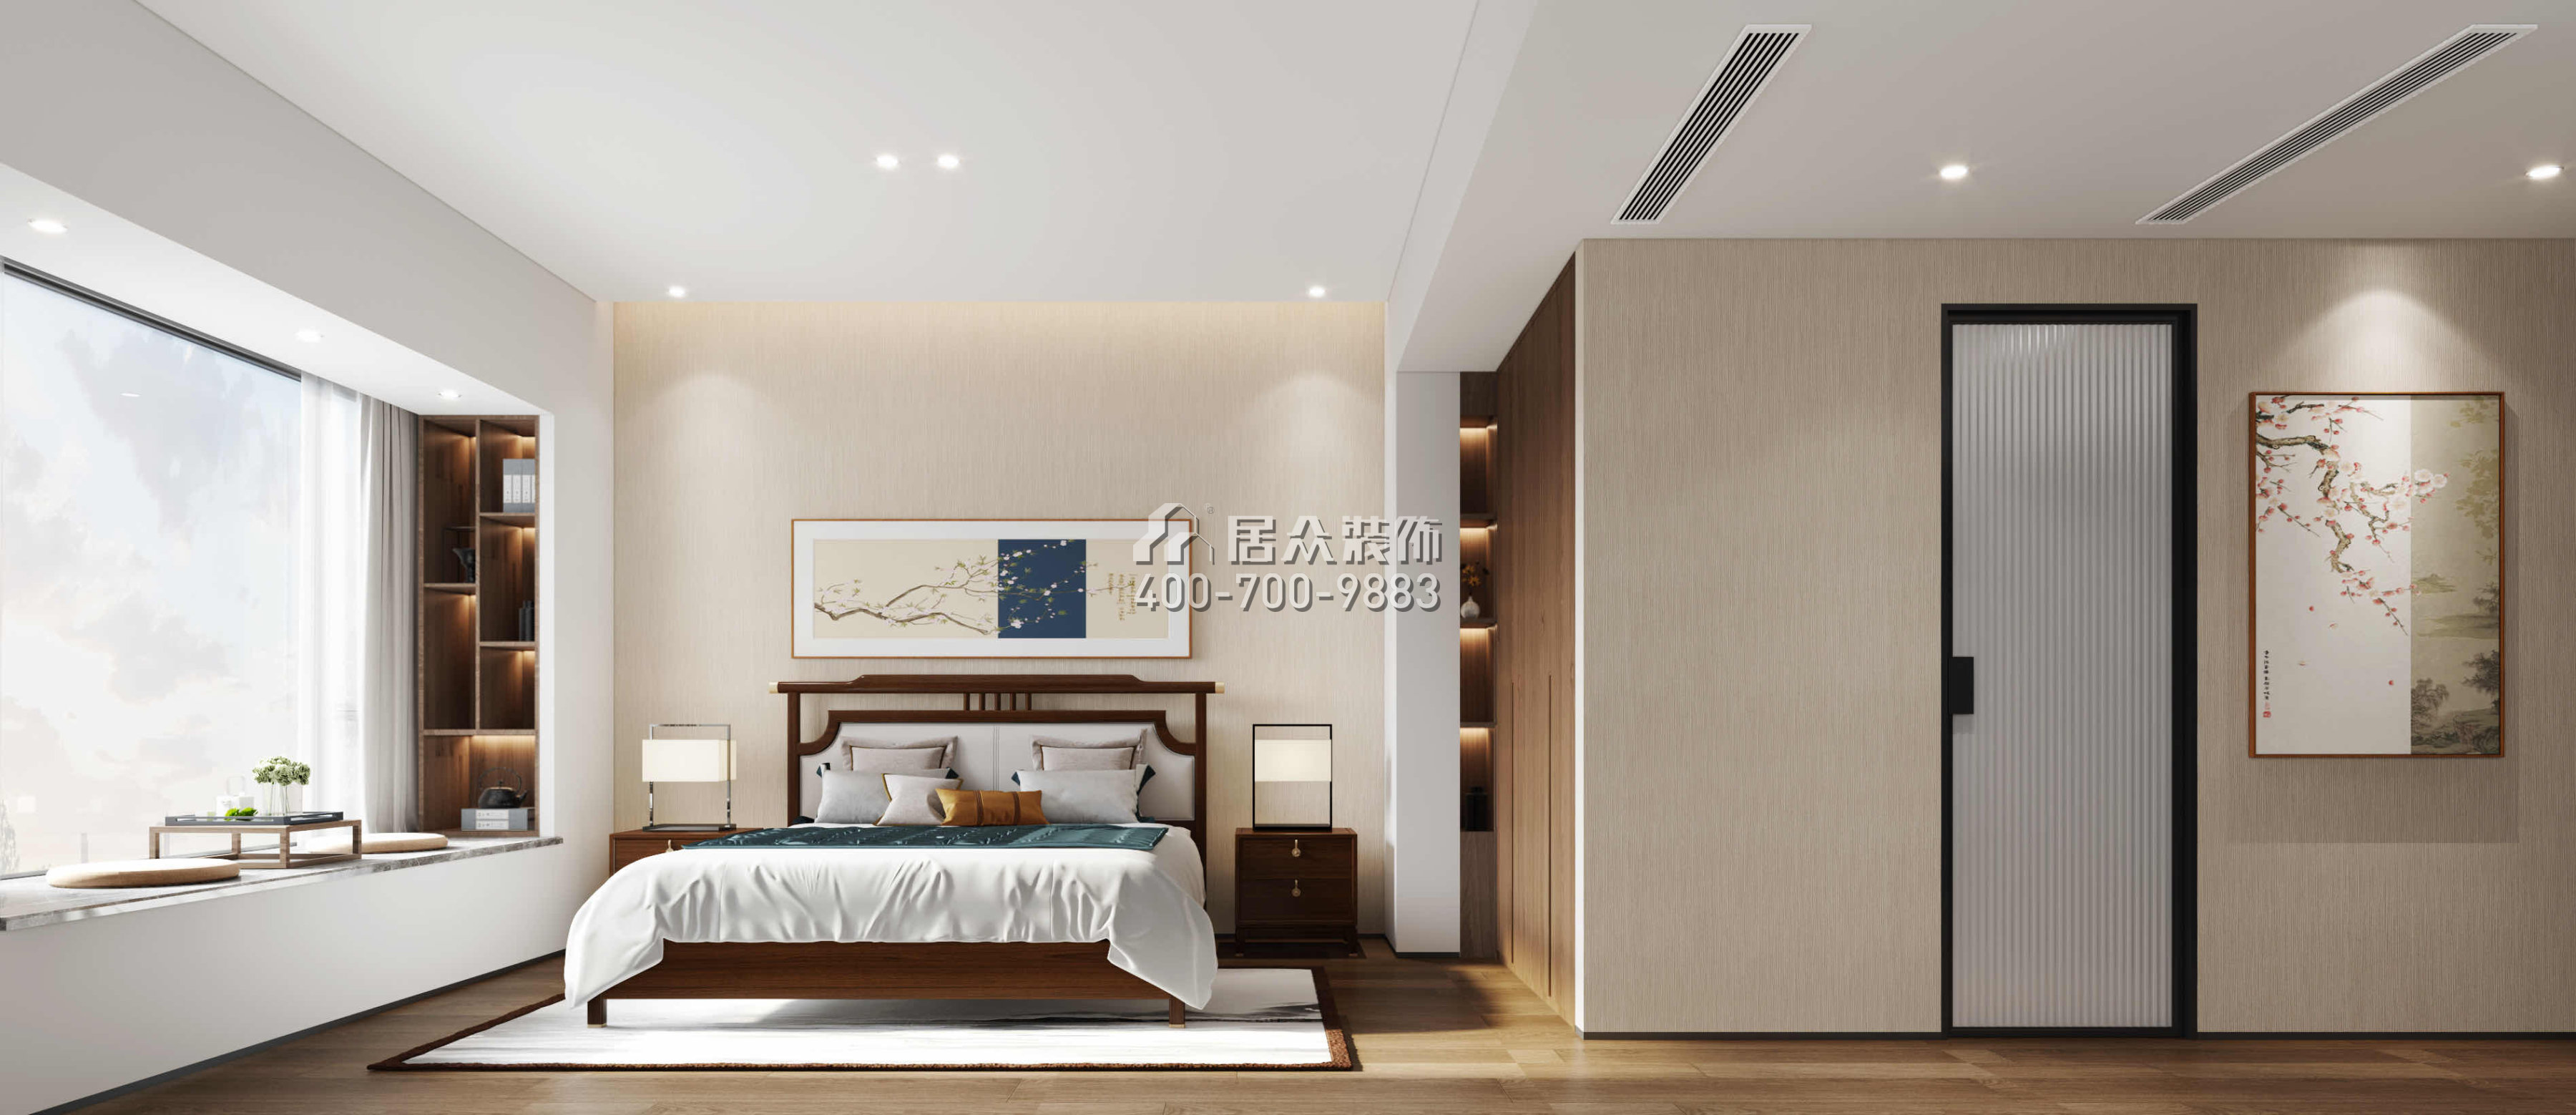 香蜜湖深业中城185平方米现代简约风格平层户型卧室装修效果图